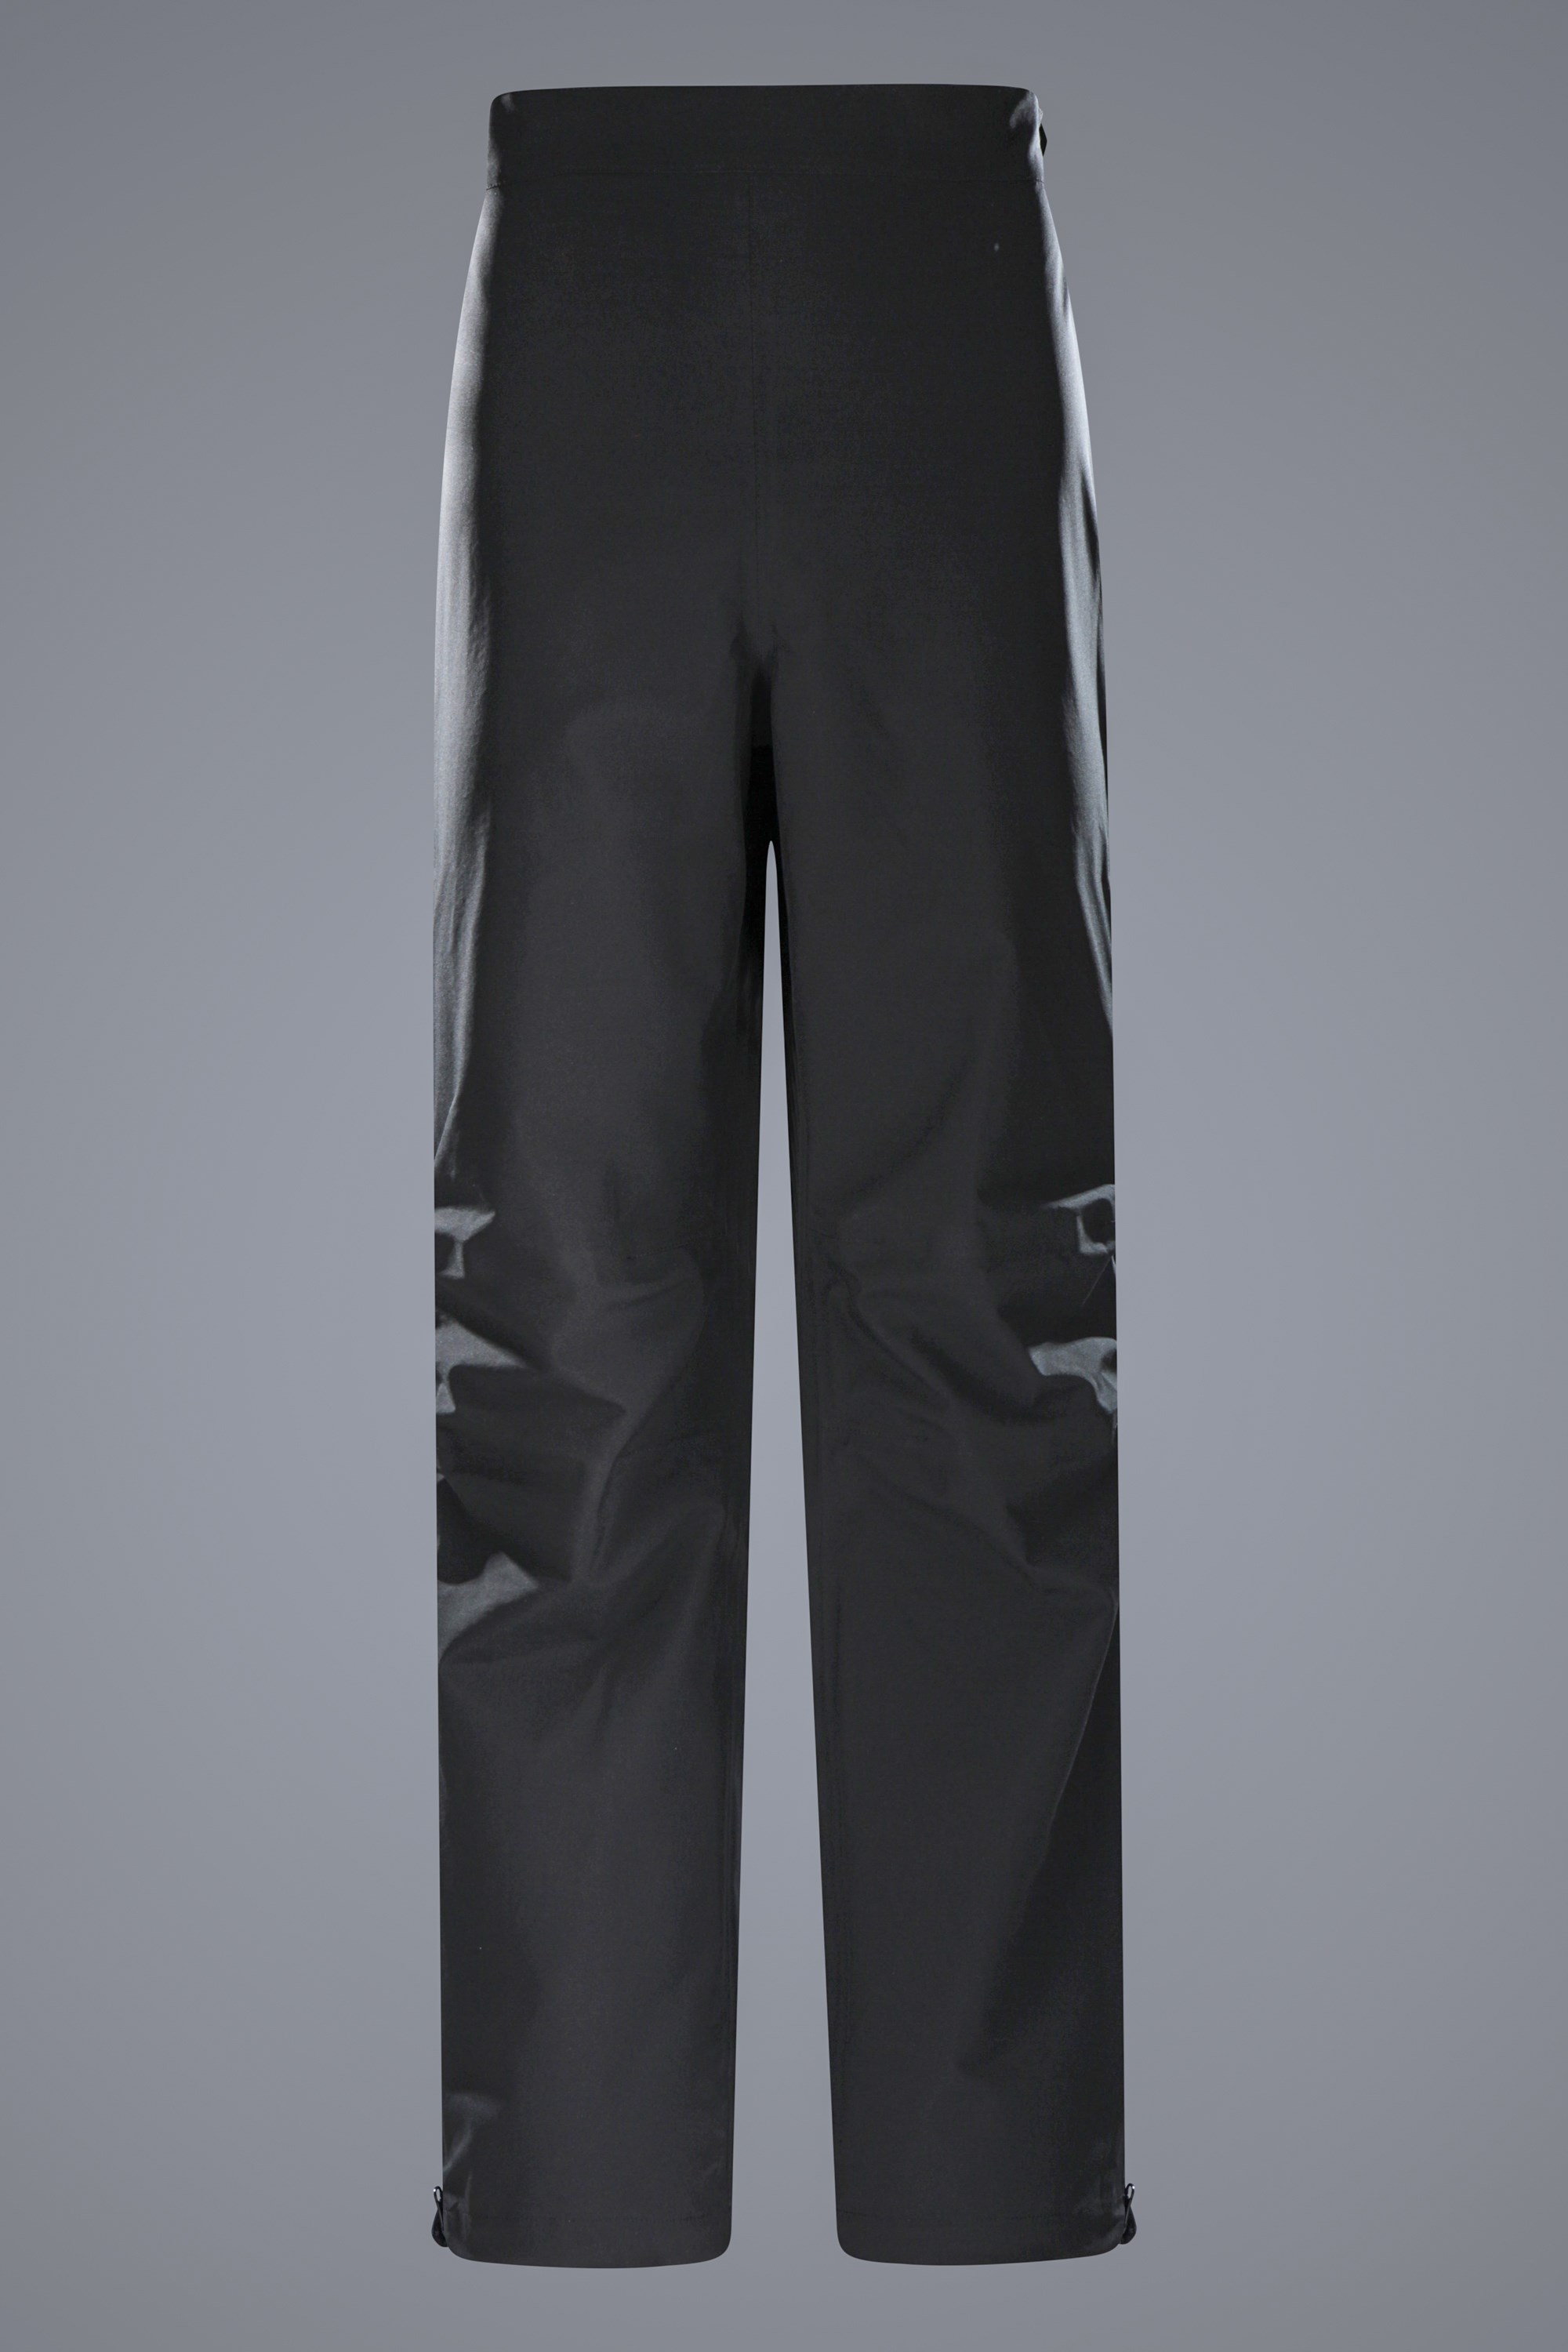 Ultra Typhoon Mens Waterproof Overpants - Black